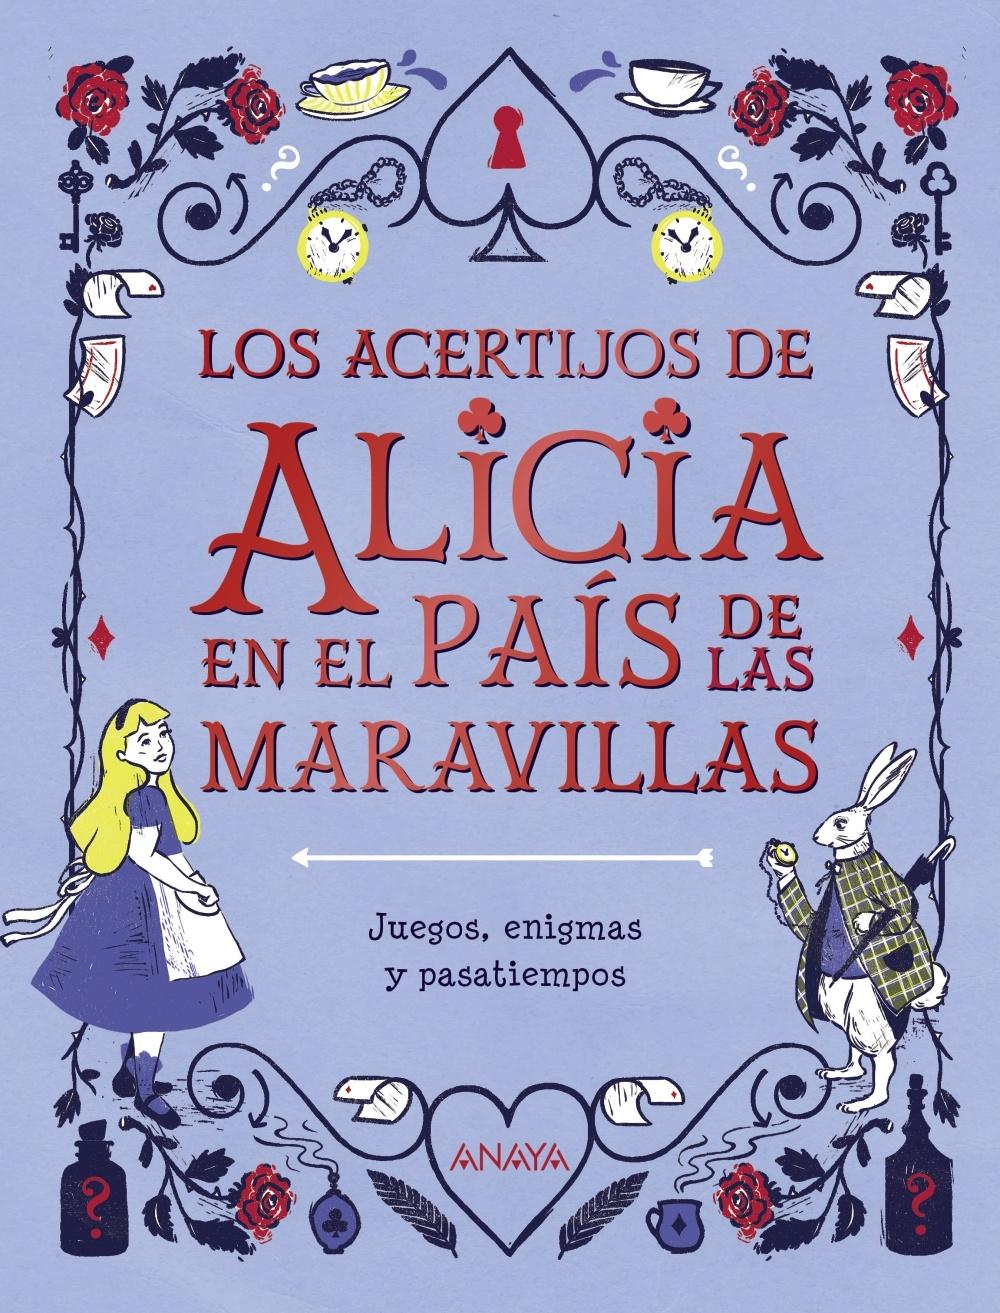 Los acertijos de Alicia e  el País de las Maravillas "Juegos, enigmas y pasatiempos". 